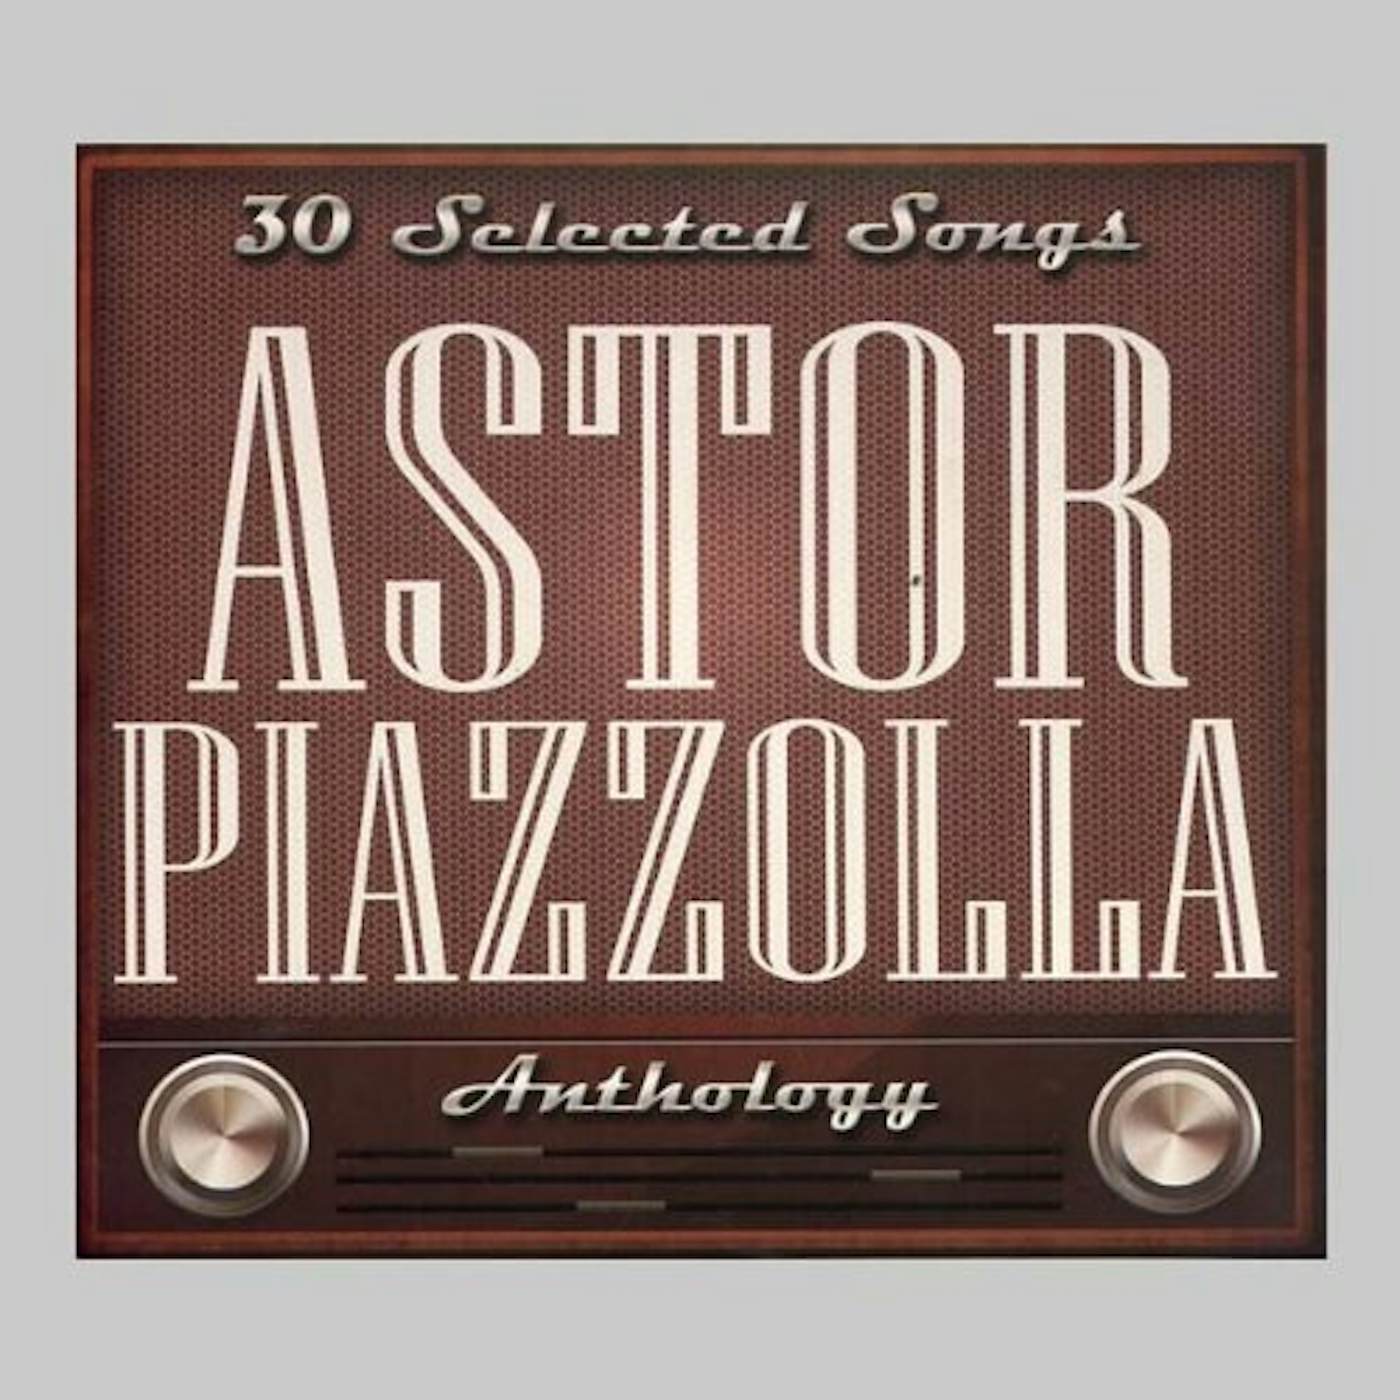 ASTOR PIAZZOLLA-30 SELECTED SONGS CD